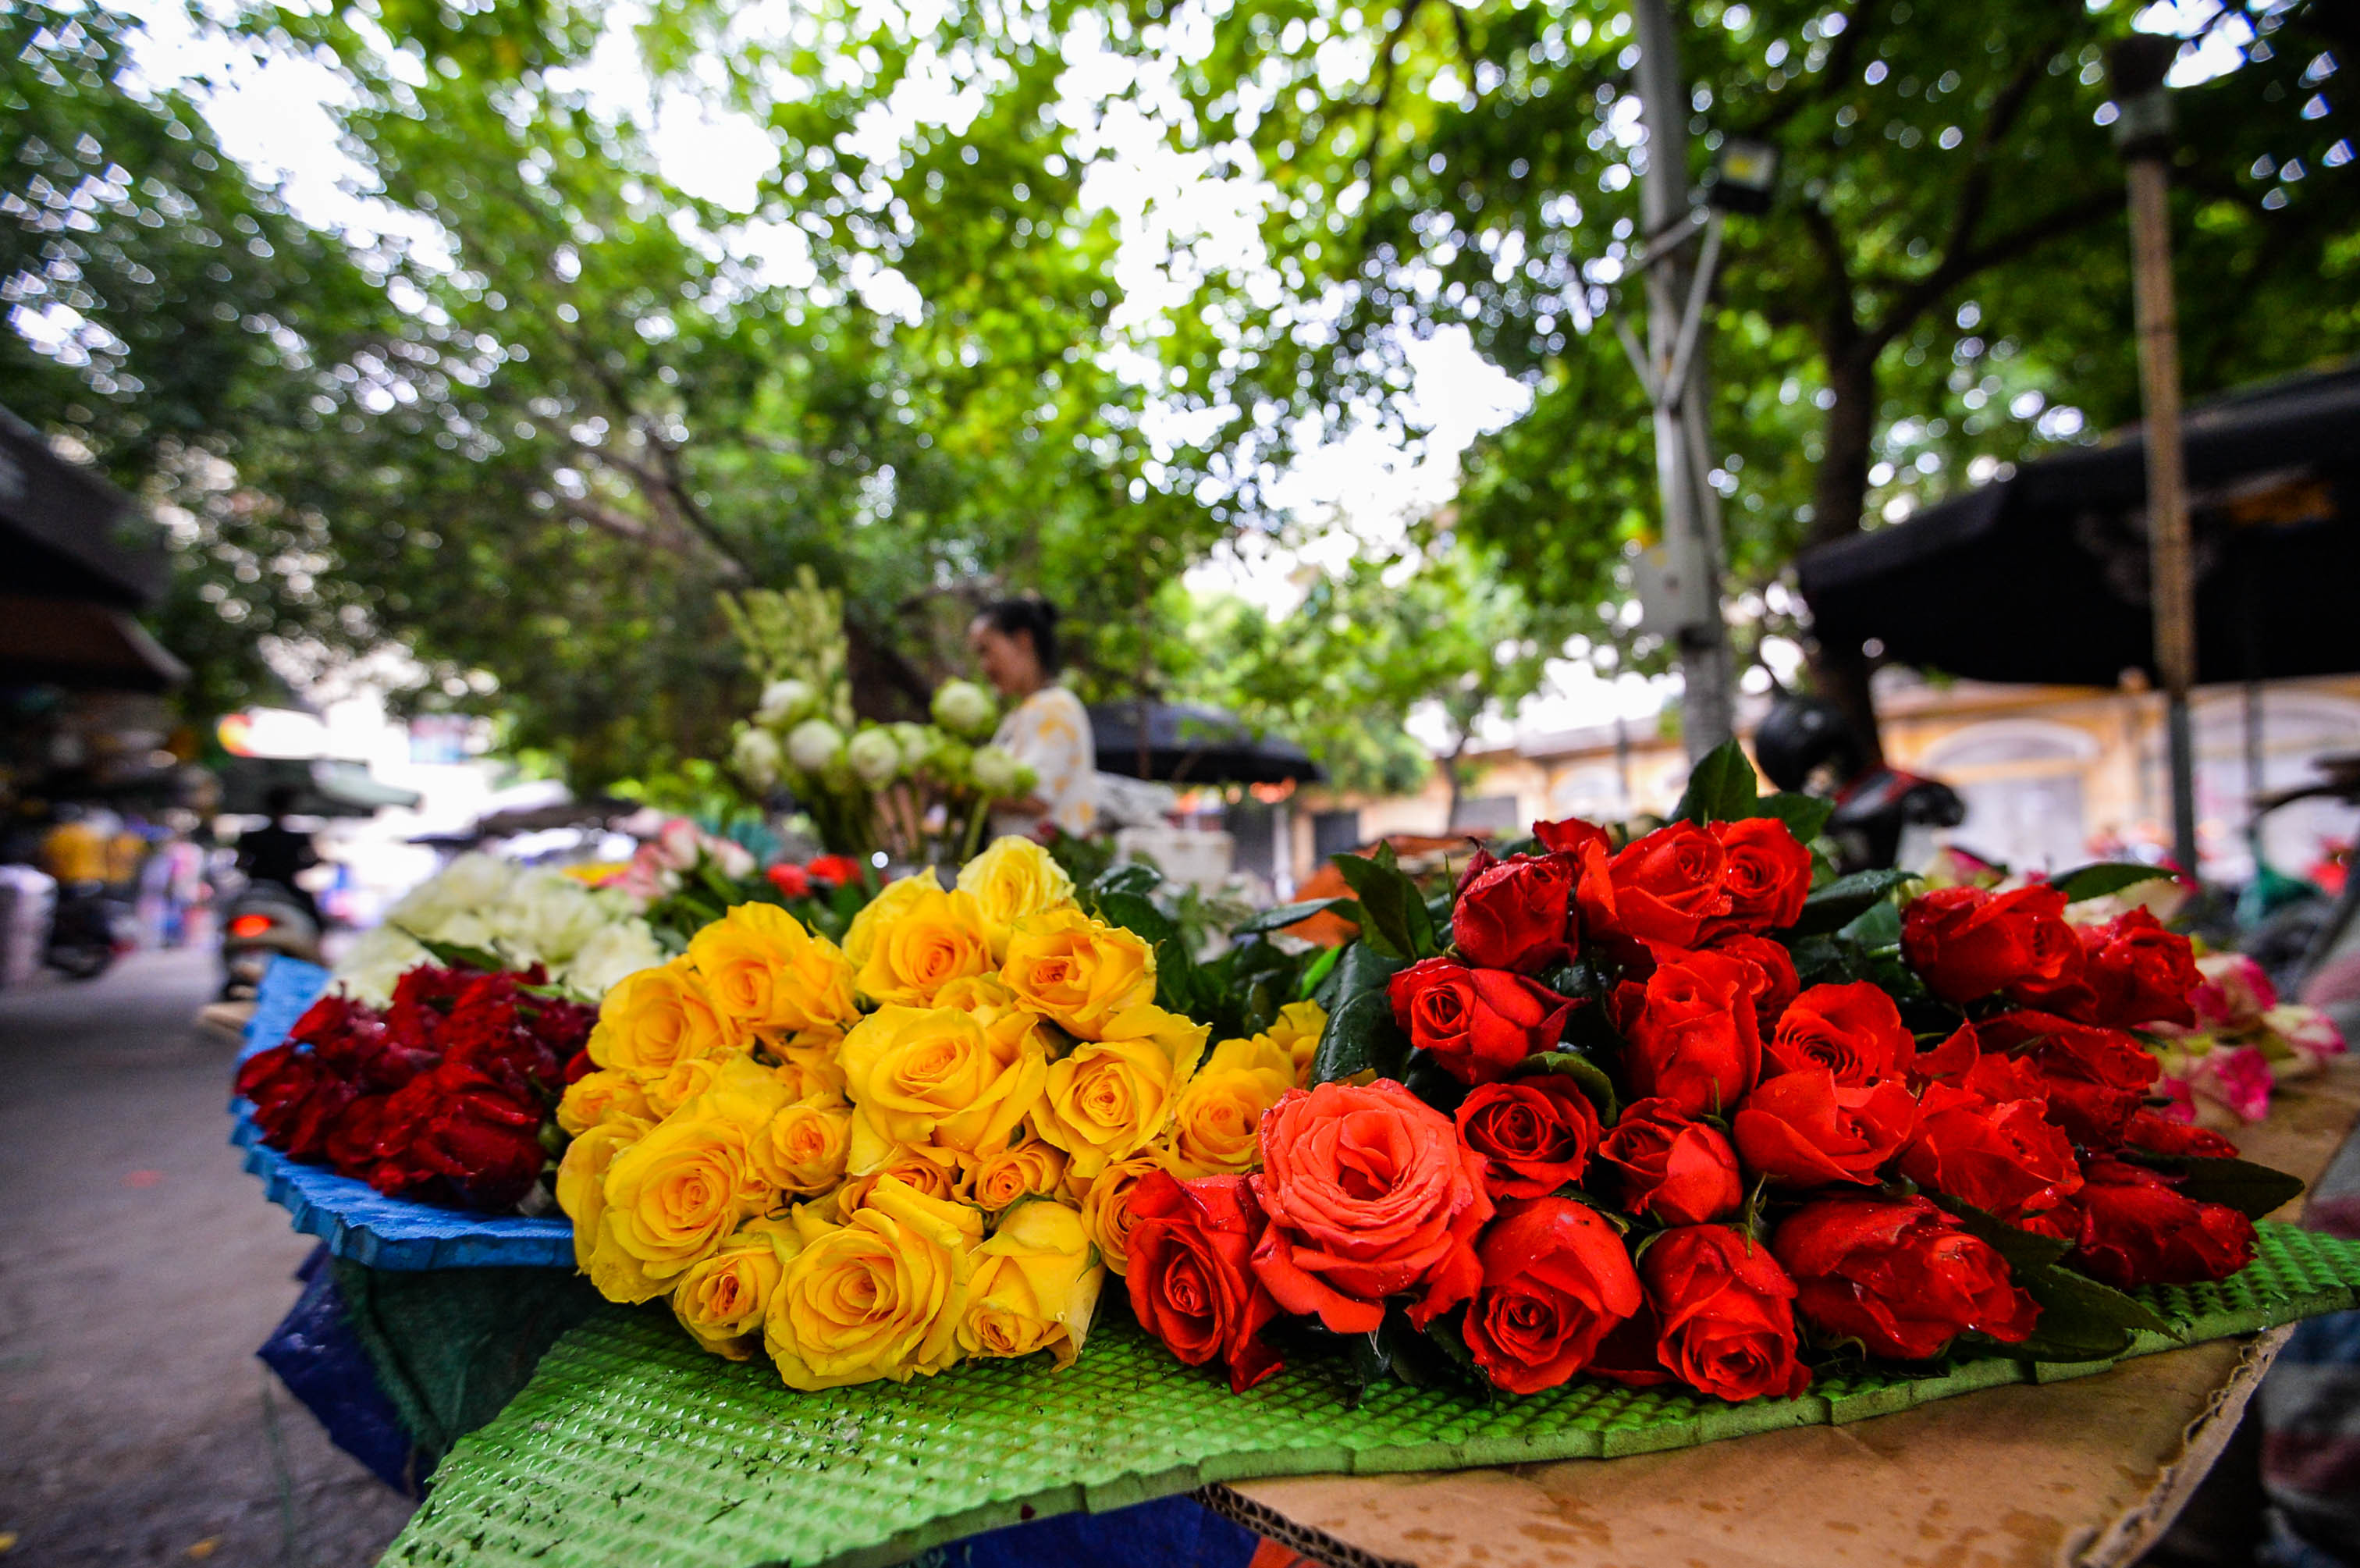 Hoa cúc là loại hoa được thắp hương nhiều nhất nhưng một chủ cửa hàng cho biết những năm gần đây, khách hàng dần có xu hướng mua hoa hồng, hoa sen để thay thế, thắp hương vào ngày đầu tháng 7 Âm lịch. 